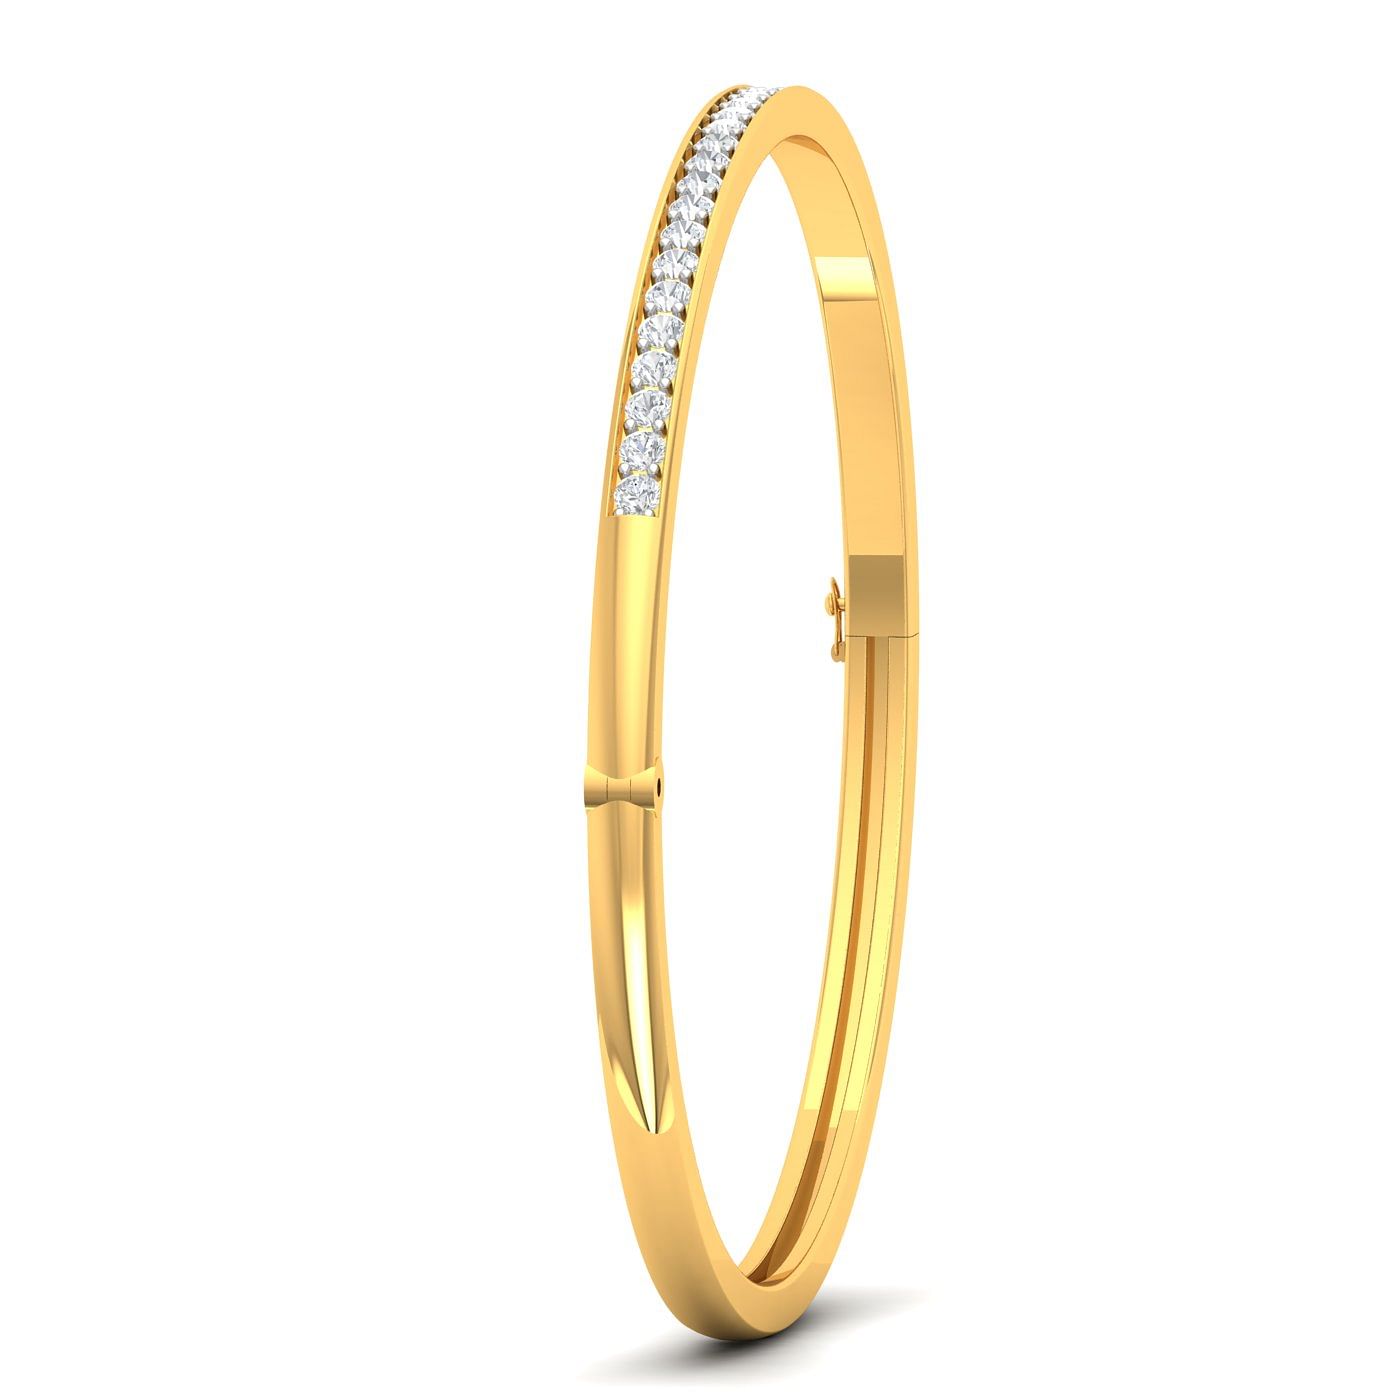 Daily wear yellow gold Esmeralda Diamond Bracelet